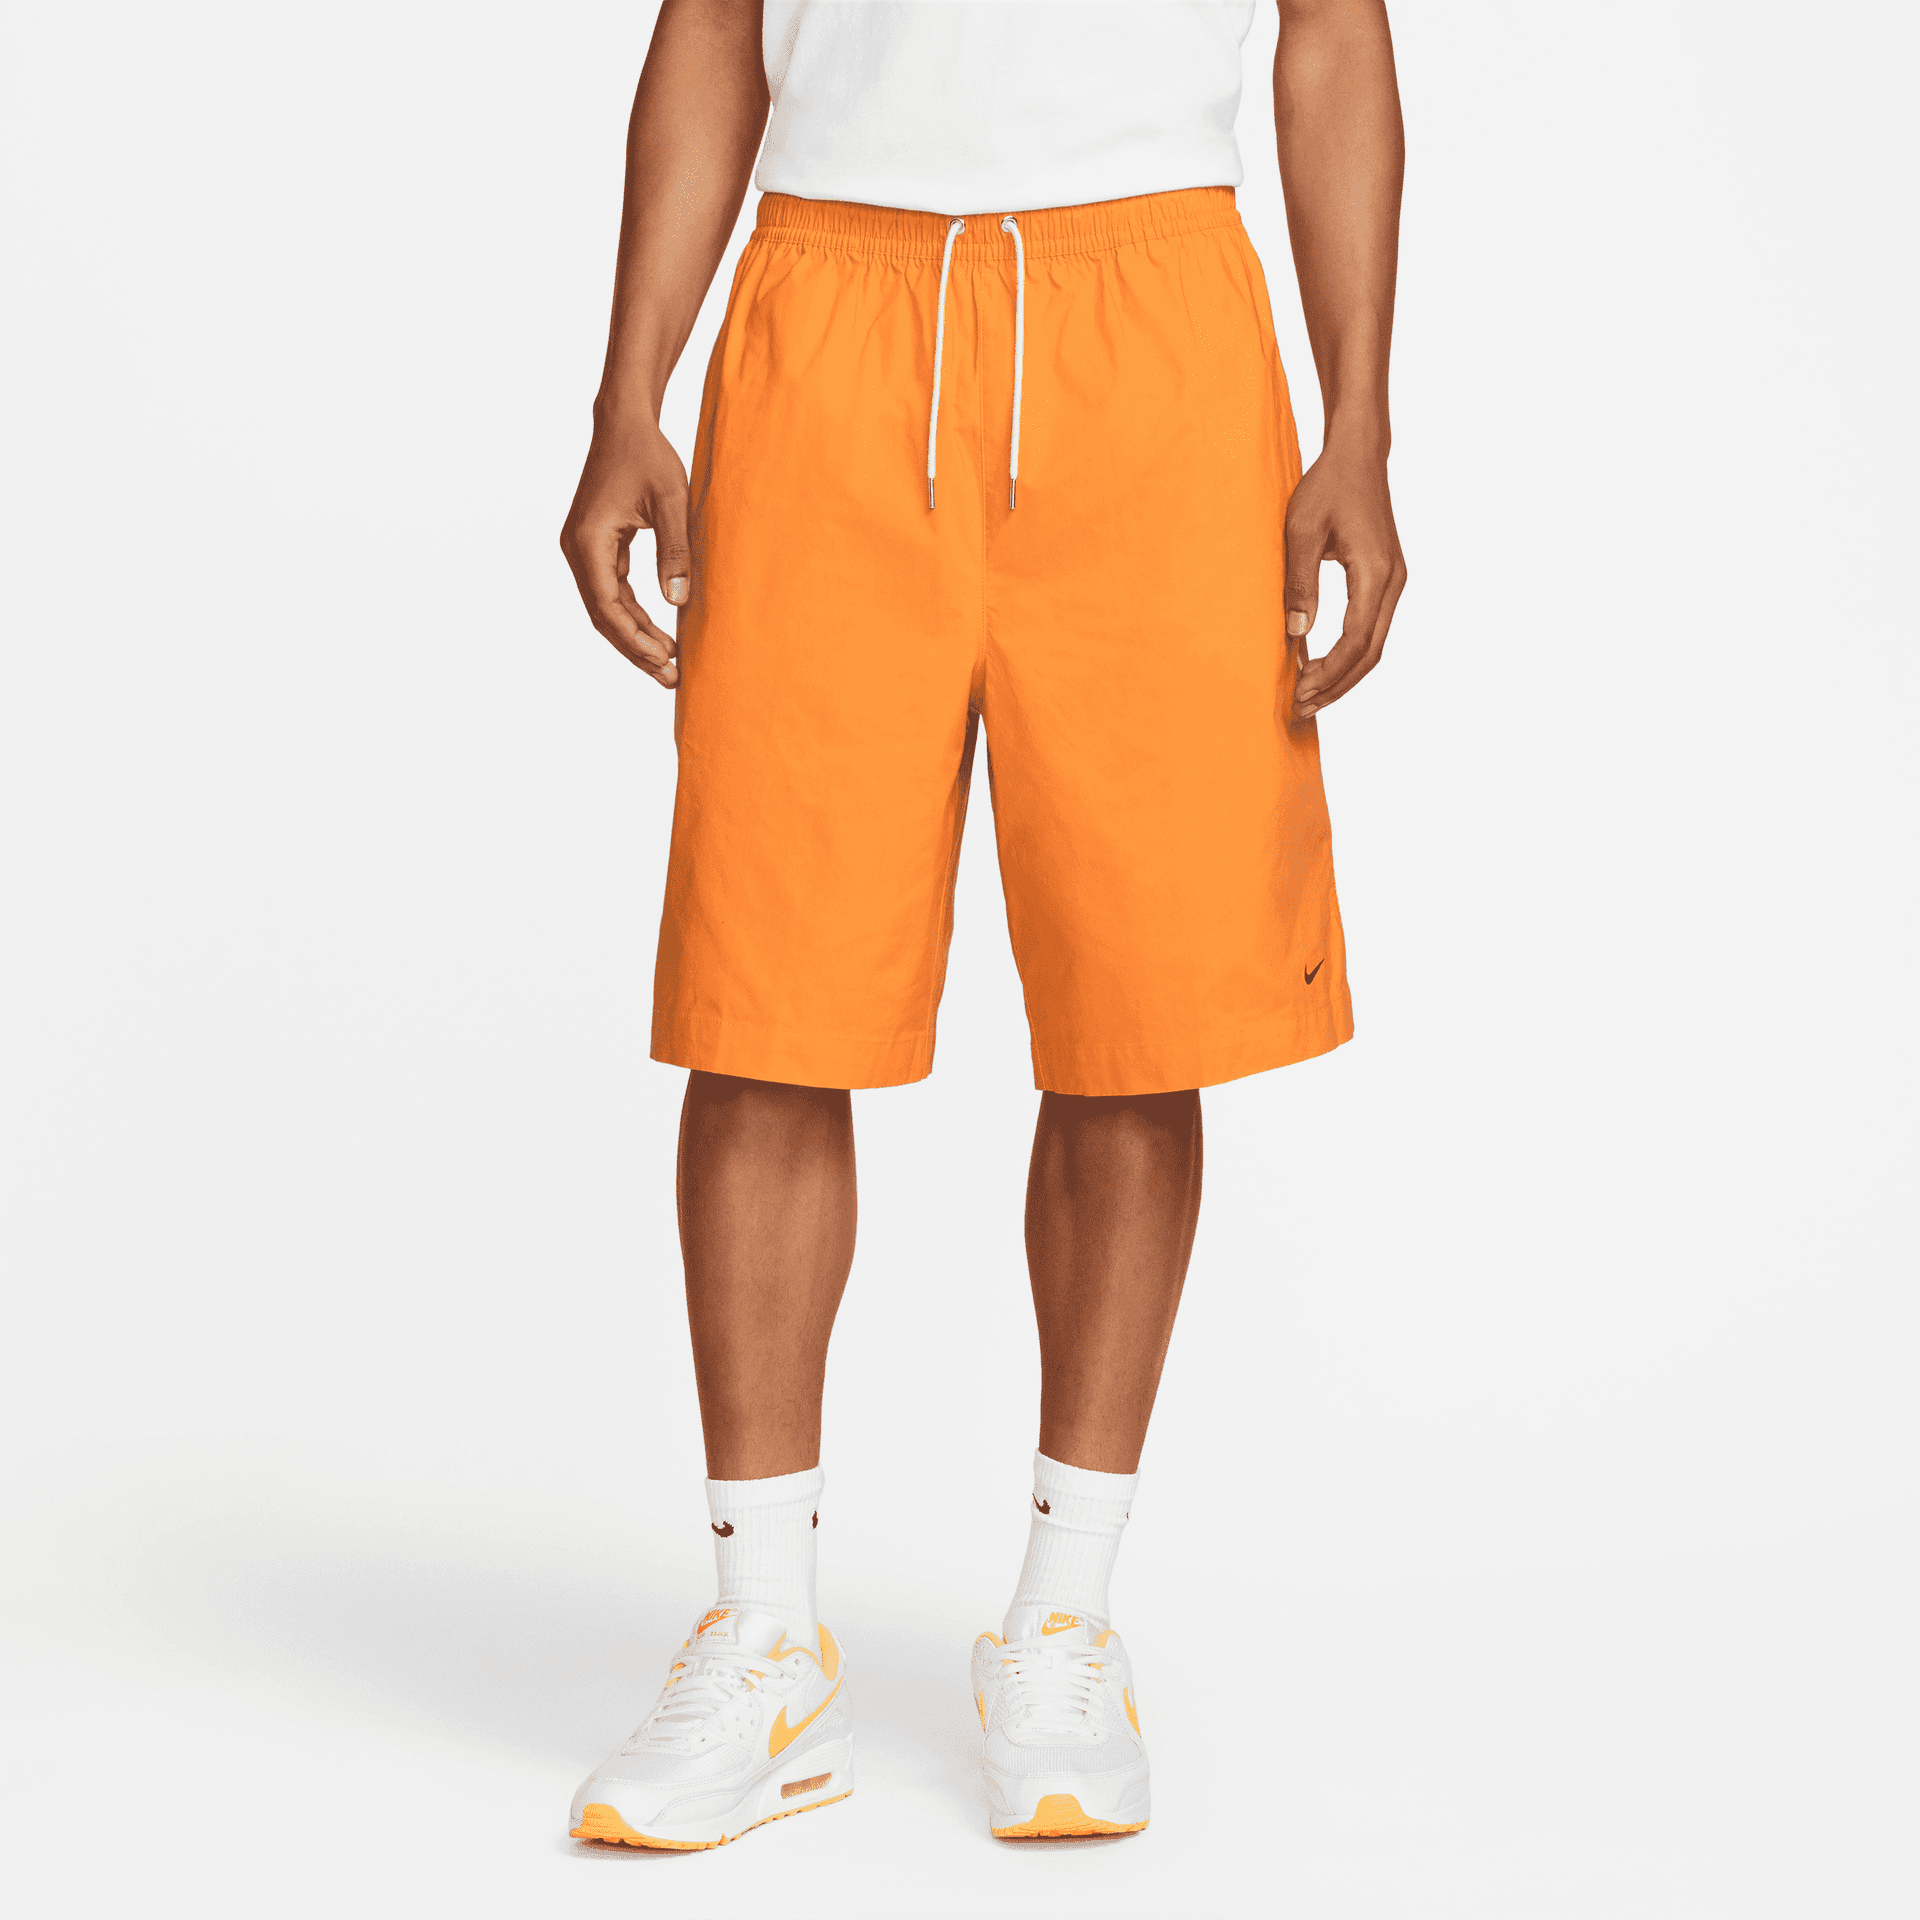 Спортивные шорты мужские Nike Ste Wvn Oversized Short DM6692-886 оранжевые M